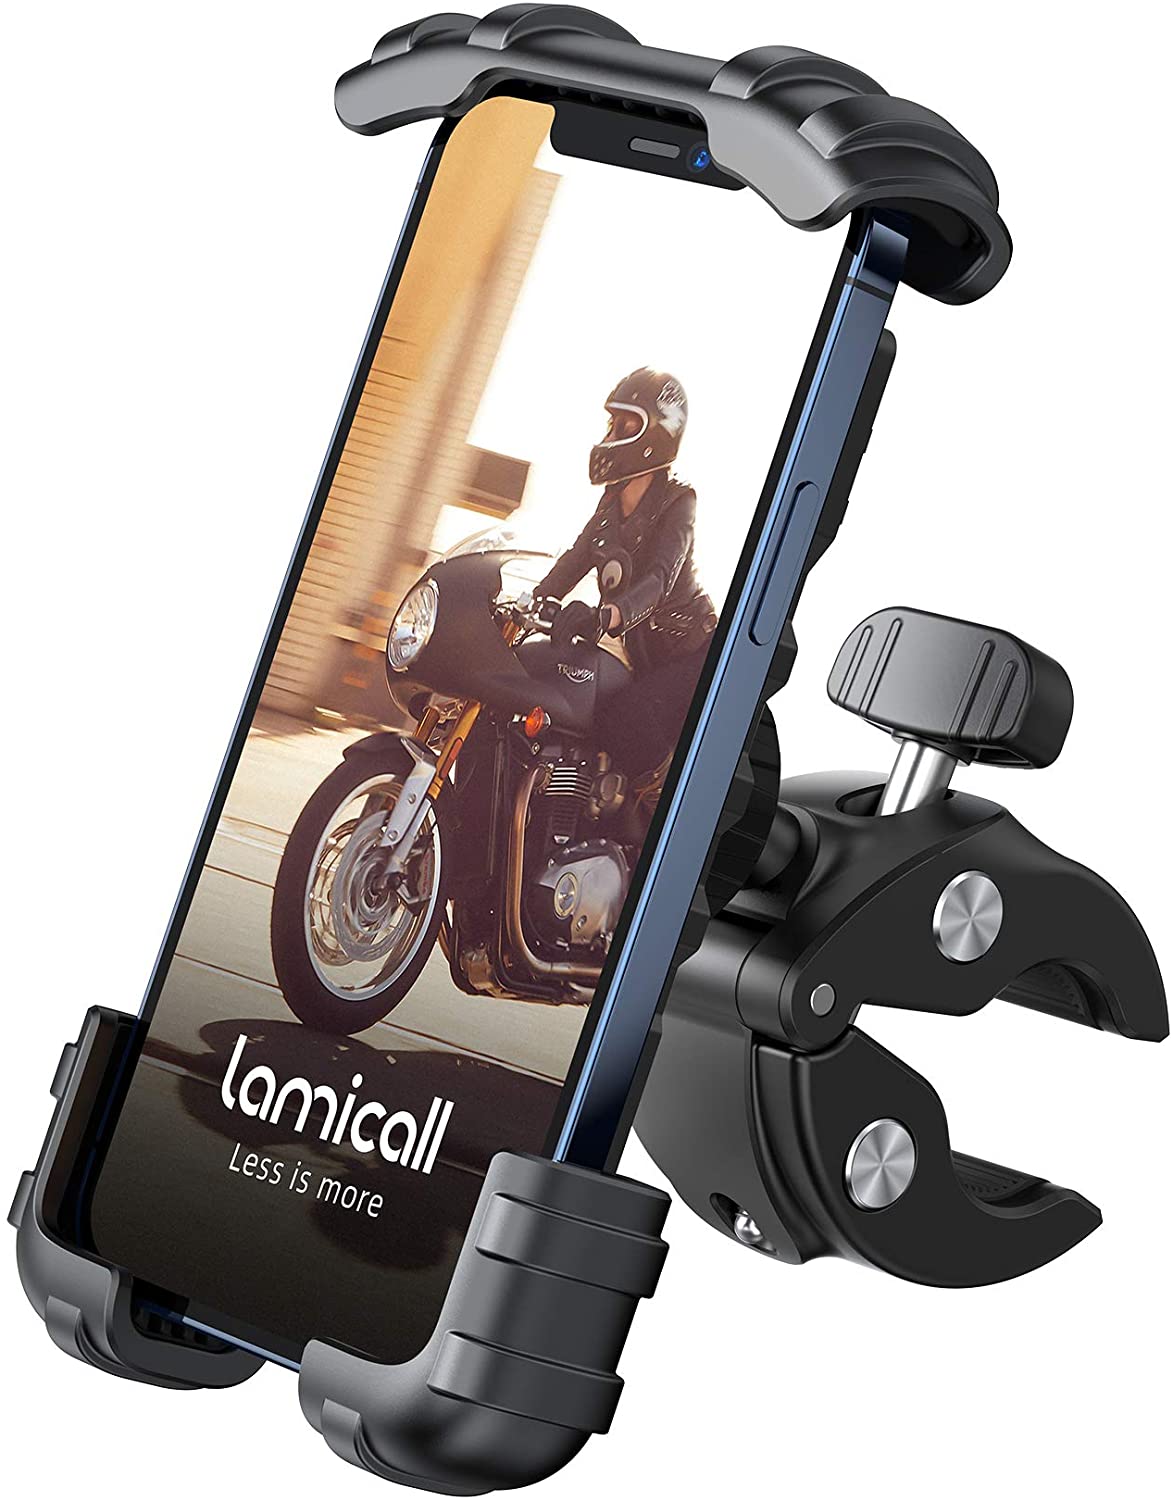 El soporte de teléfono móvil para bicicletas compatible con iPhone o Samsung Galaxy está de oferta en Amazon